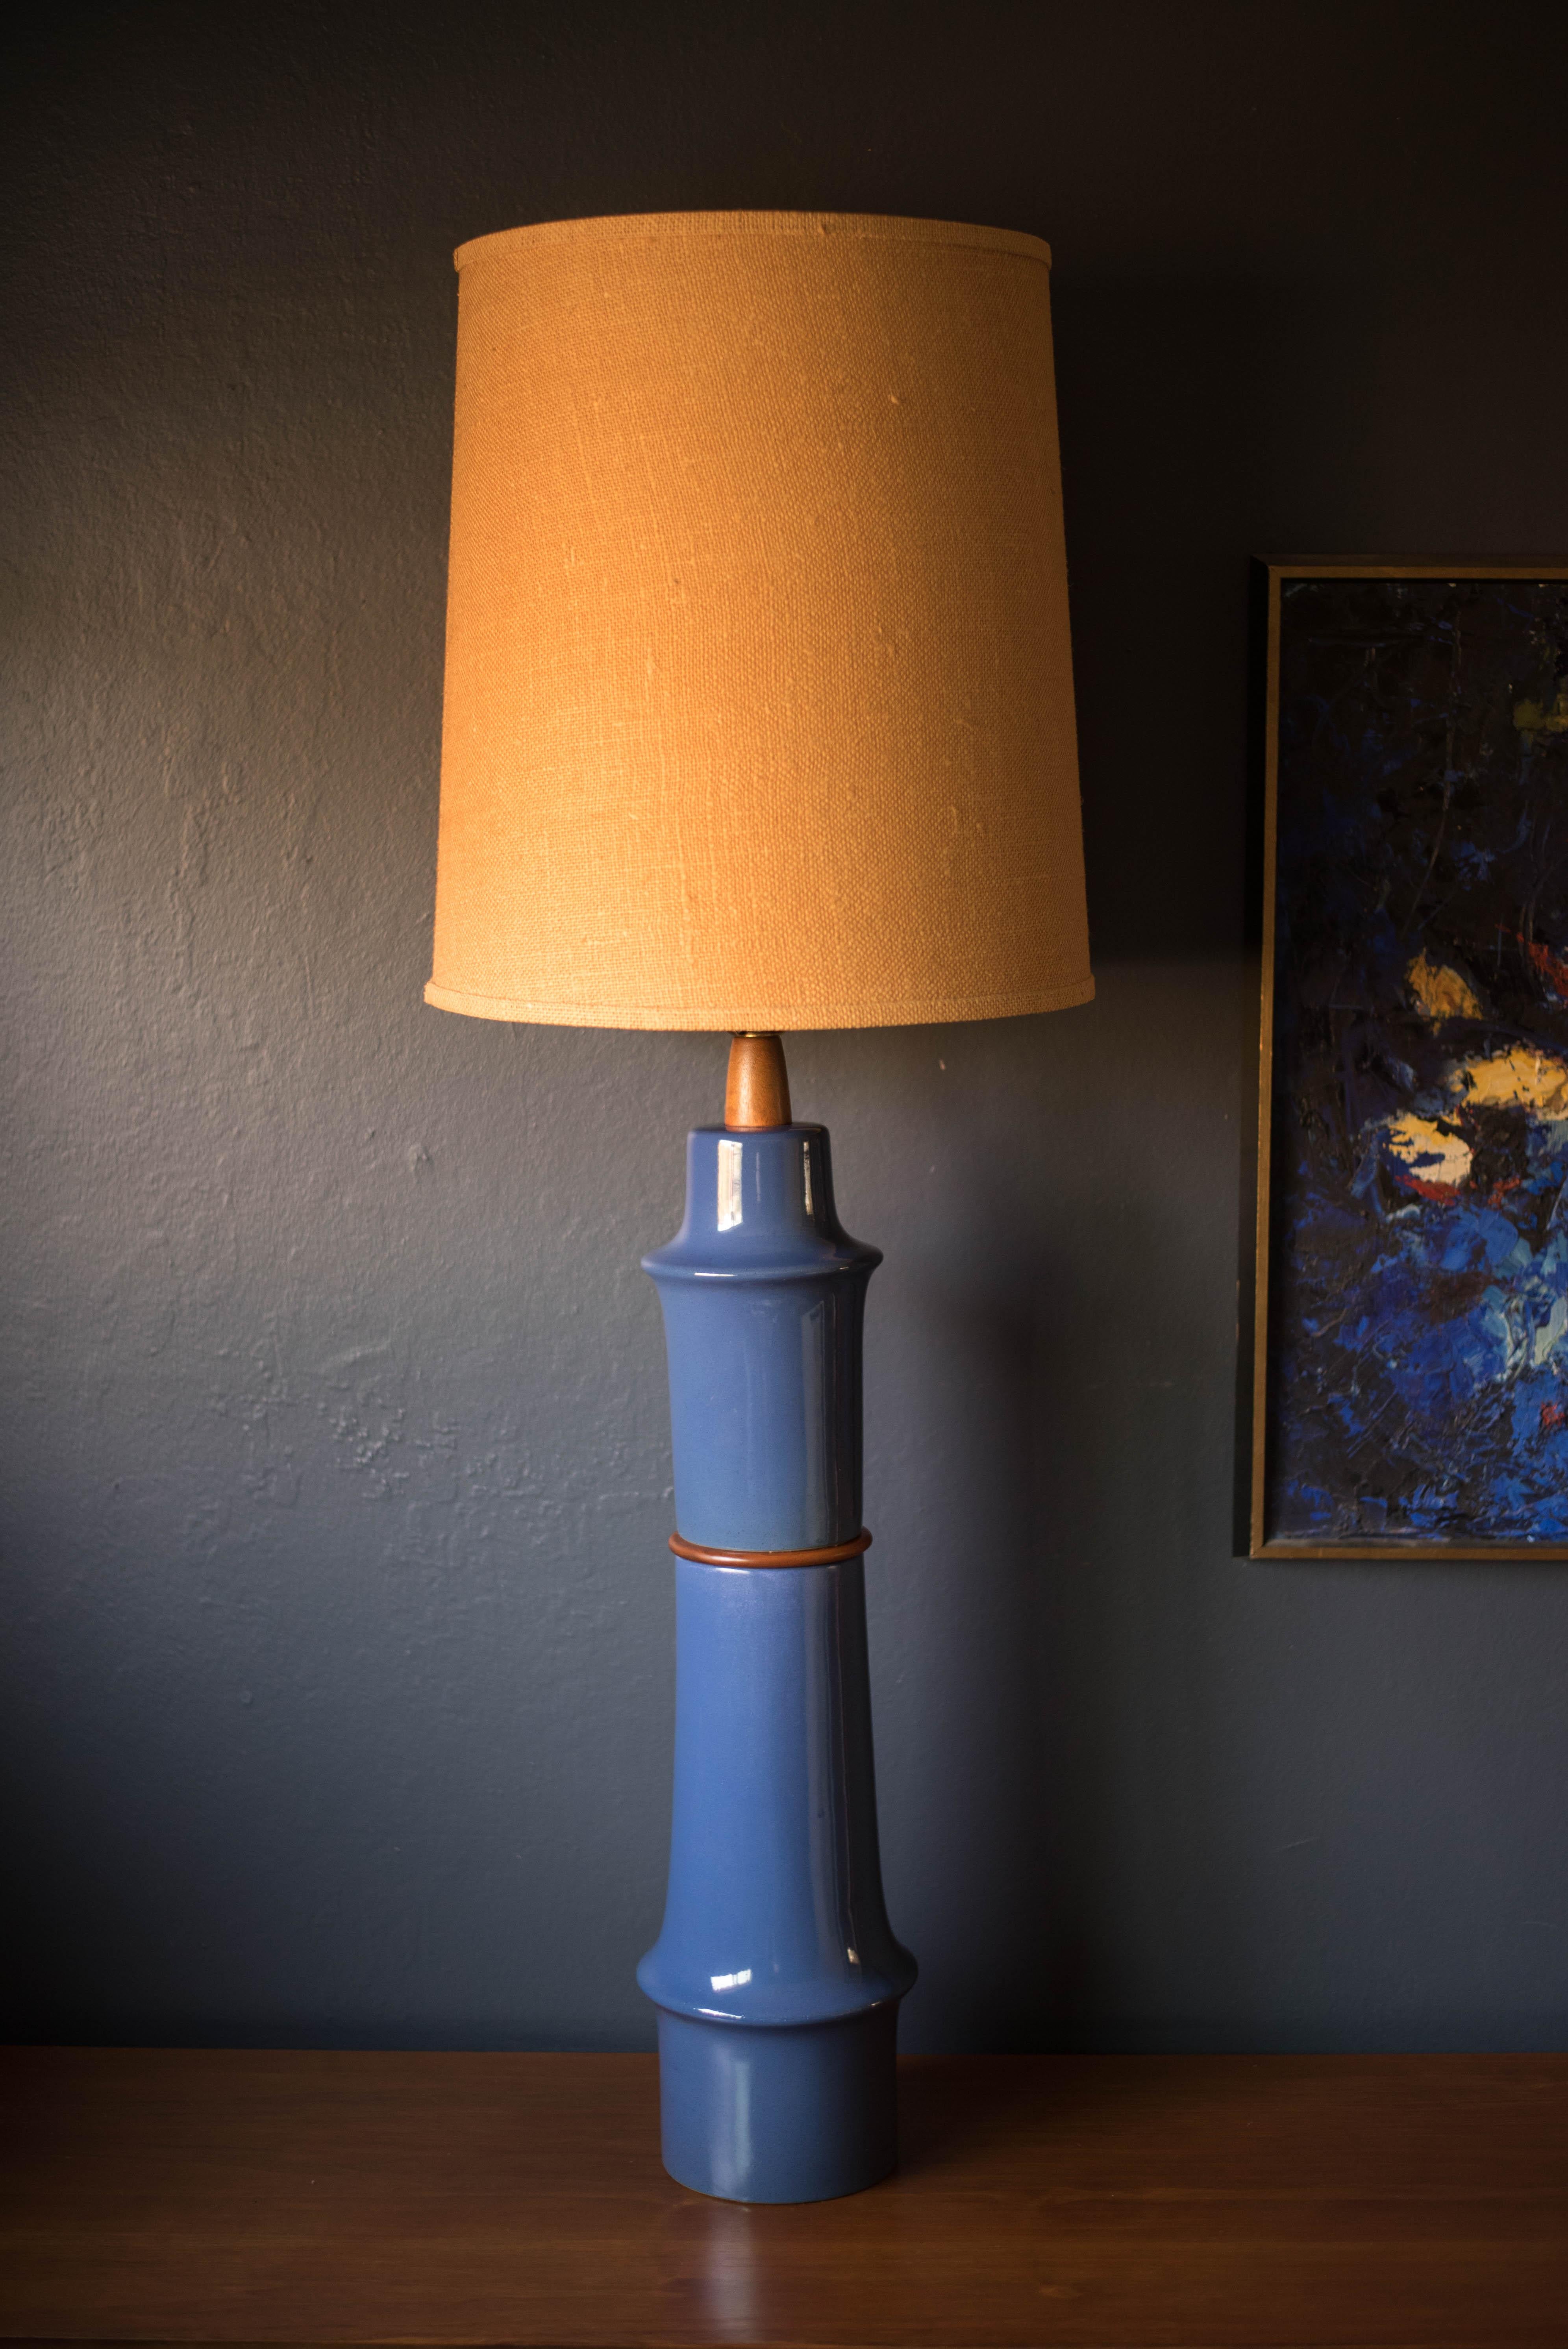 Keramik- und Walnusslampe aus der Mitte des Jahrhunderts von Gordon und Jane Martz für Marshall Studios. Diese übergroße Lampe hat eine skulpturale, gestapelte Form und eine glänzende, tiefblaue Glasur. Mit Drei-Wege-Schaltermechanismus und